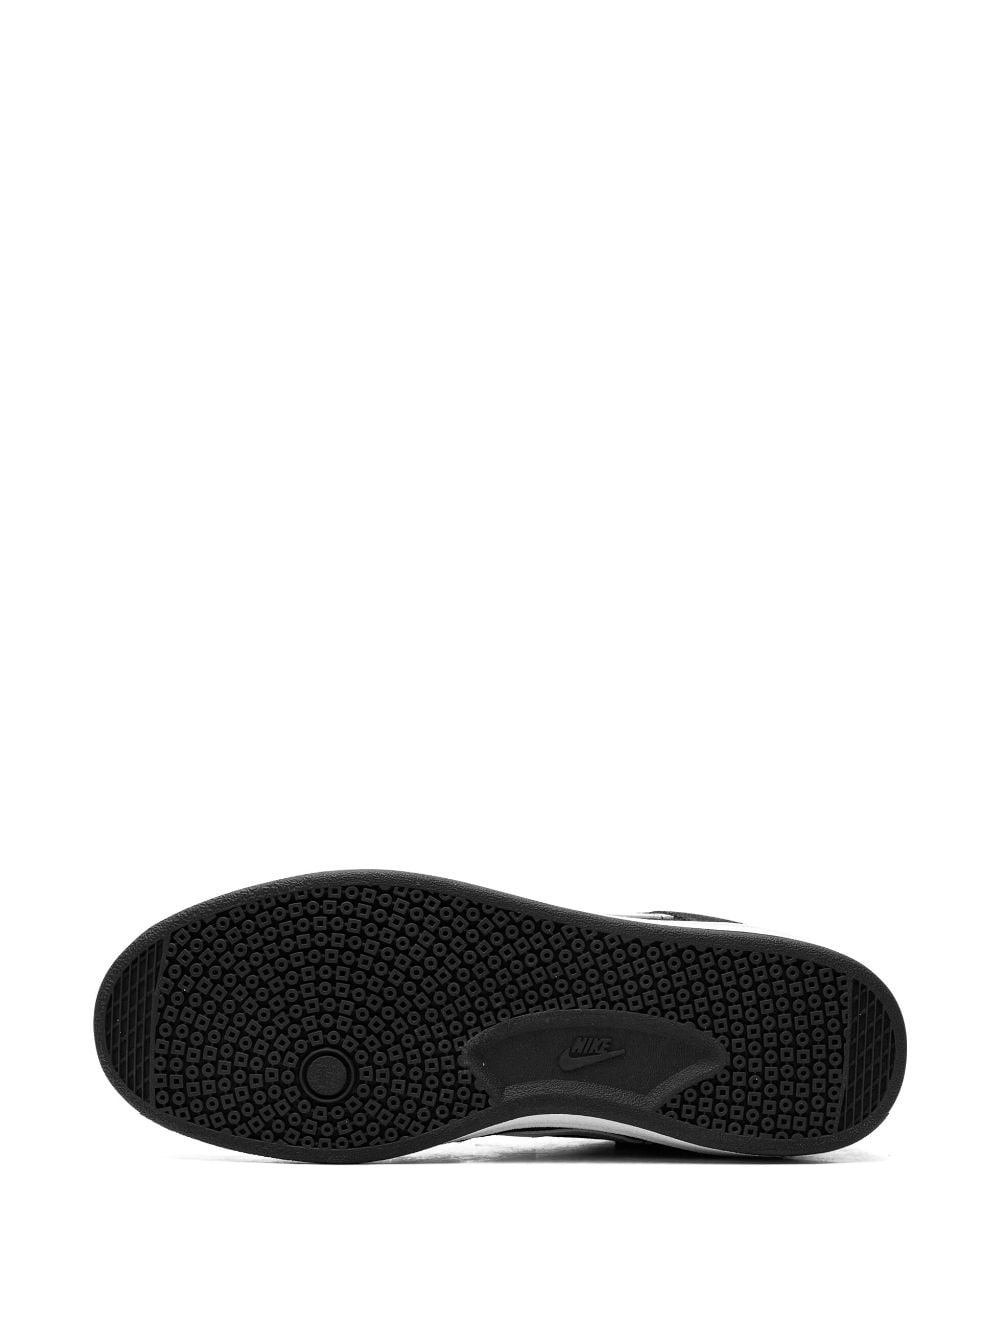 SB Alleyoop "Black/White" sneakers - 6